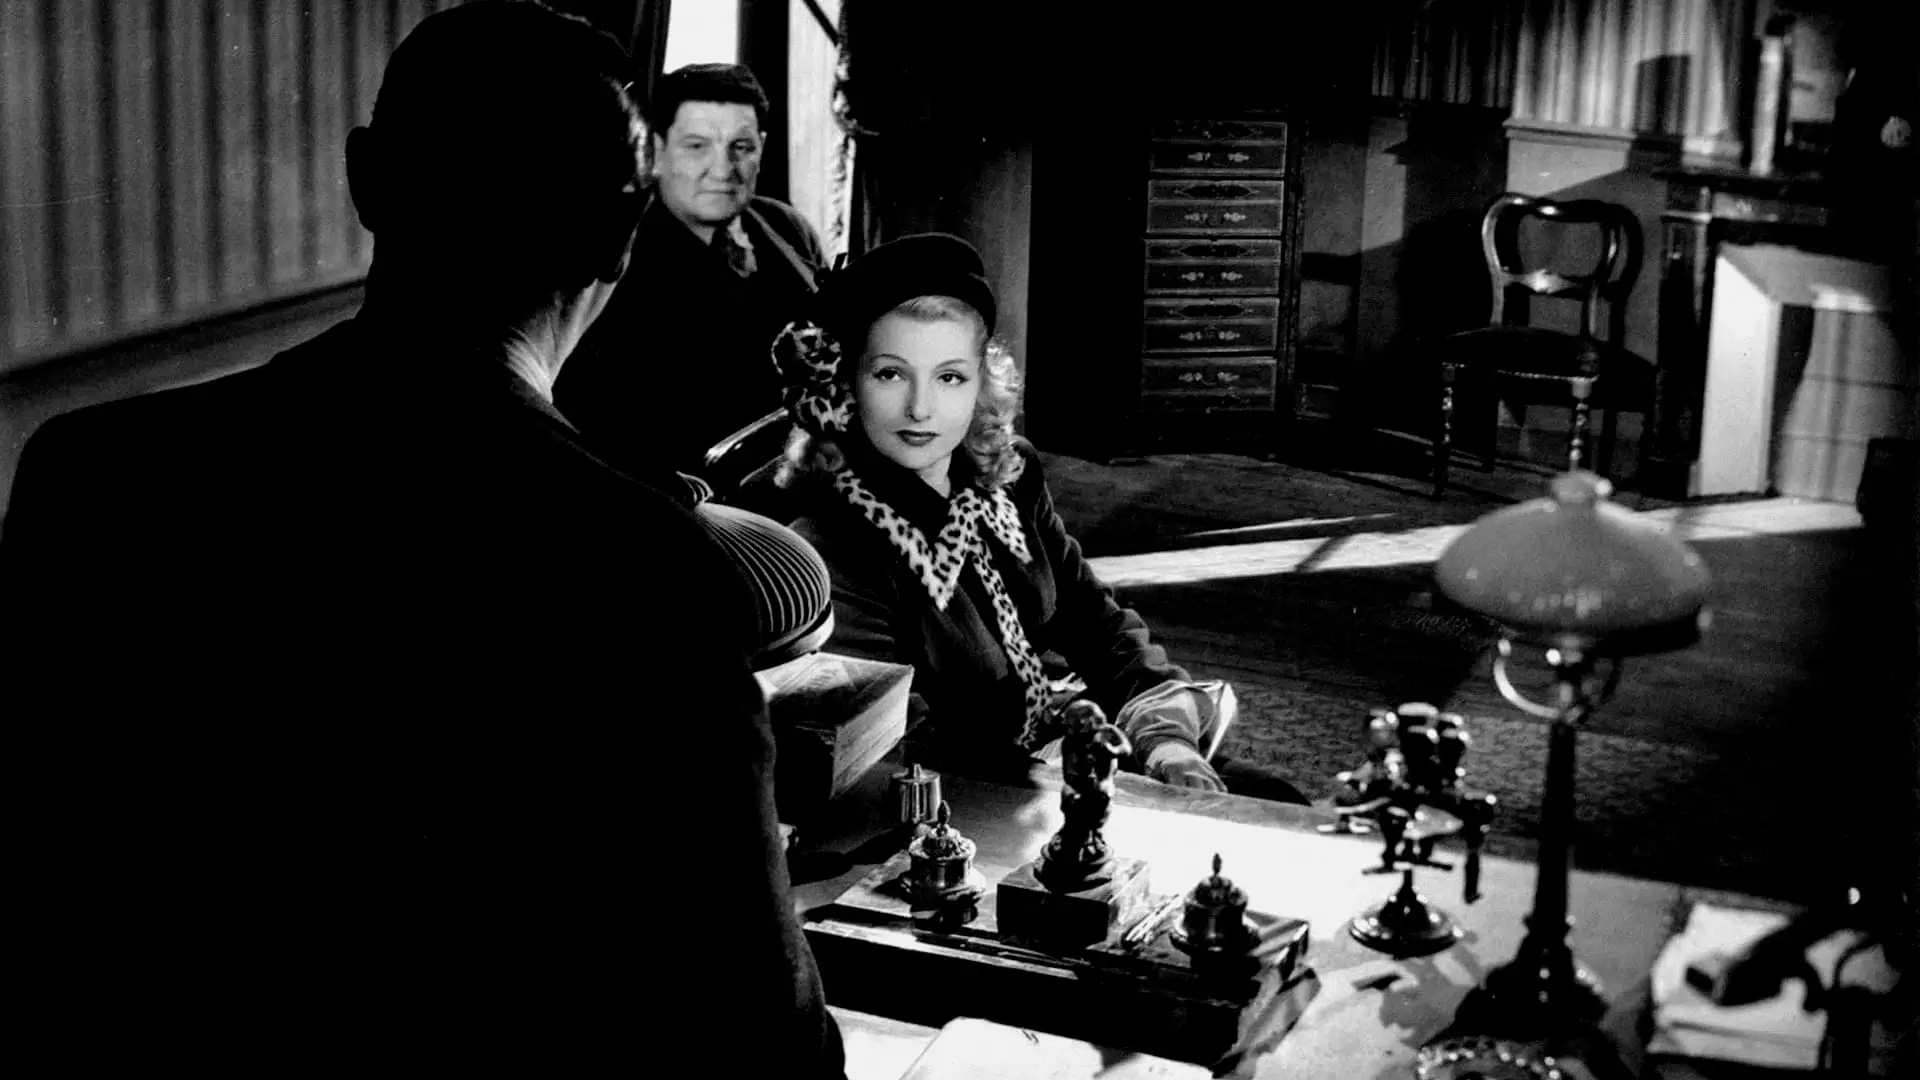 دانلود فیلم Jenny Lamour 1947